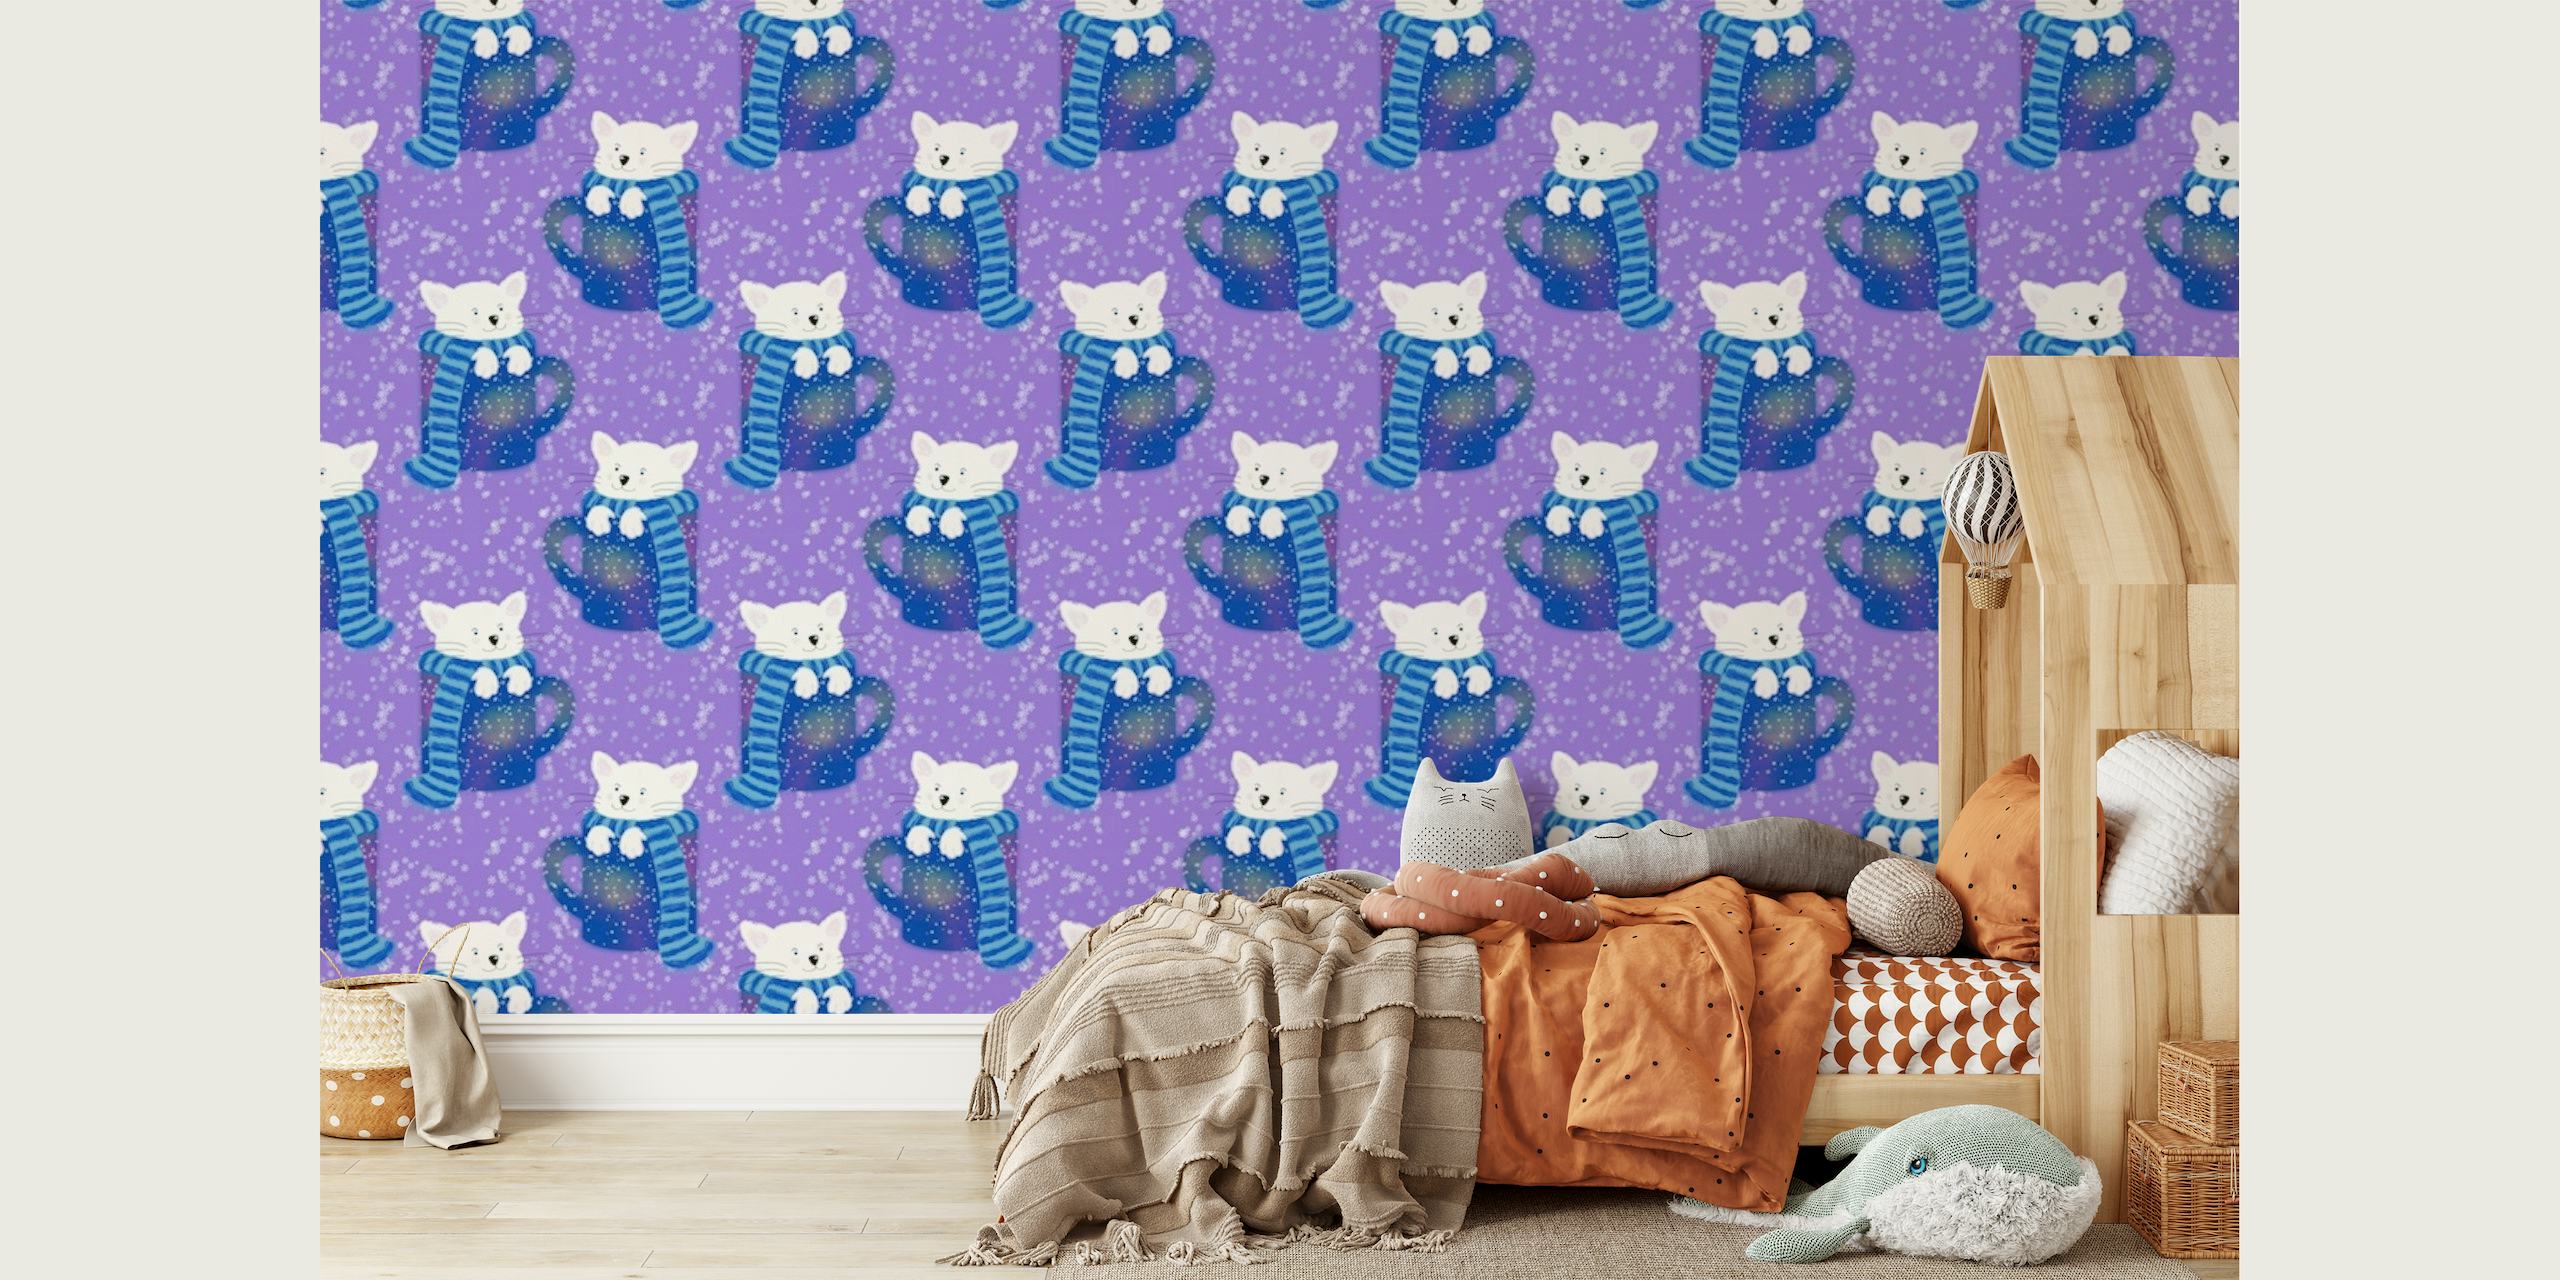 Yndige katte i tekopper-mønster på et lilla baggrundsvægmaleri